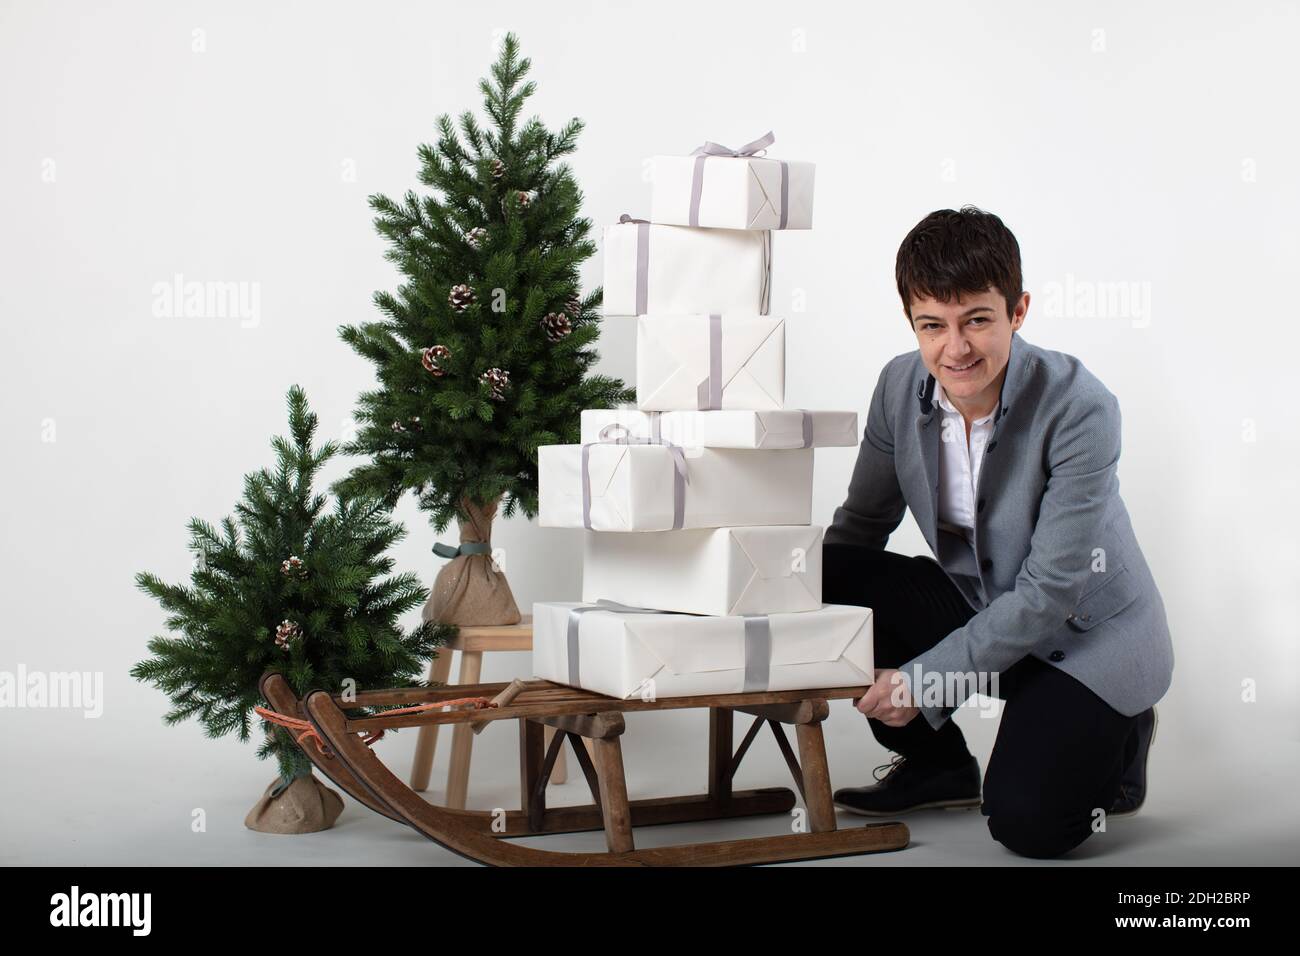 Weihnachts-themed horizontale Business-Porträt eines smart casual gekleidet weibliche Executive schieben einen Schlitten mit weißen und silberumhüllten Geschenkboxen auf einem grauen Hintergrund geladen. Stockfoto